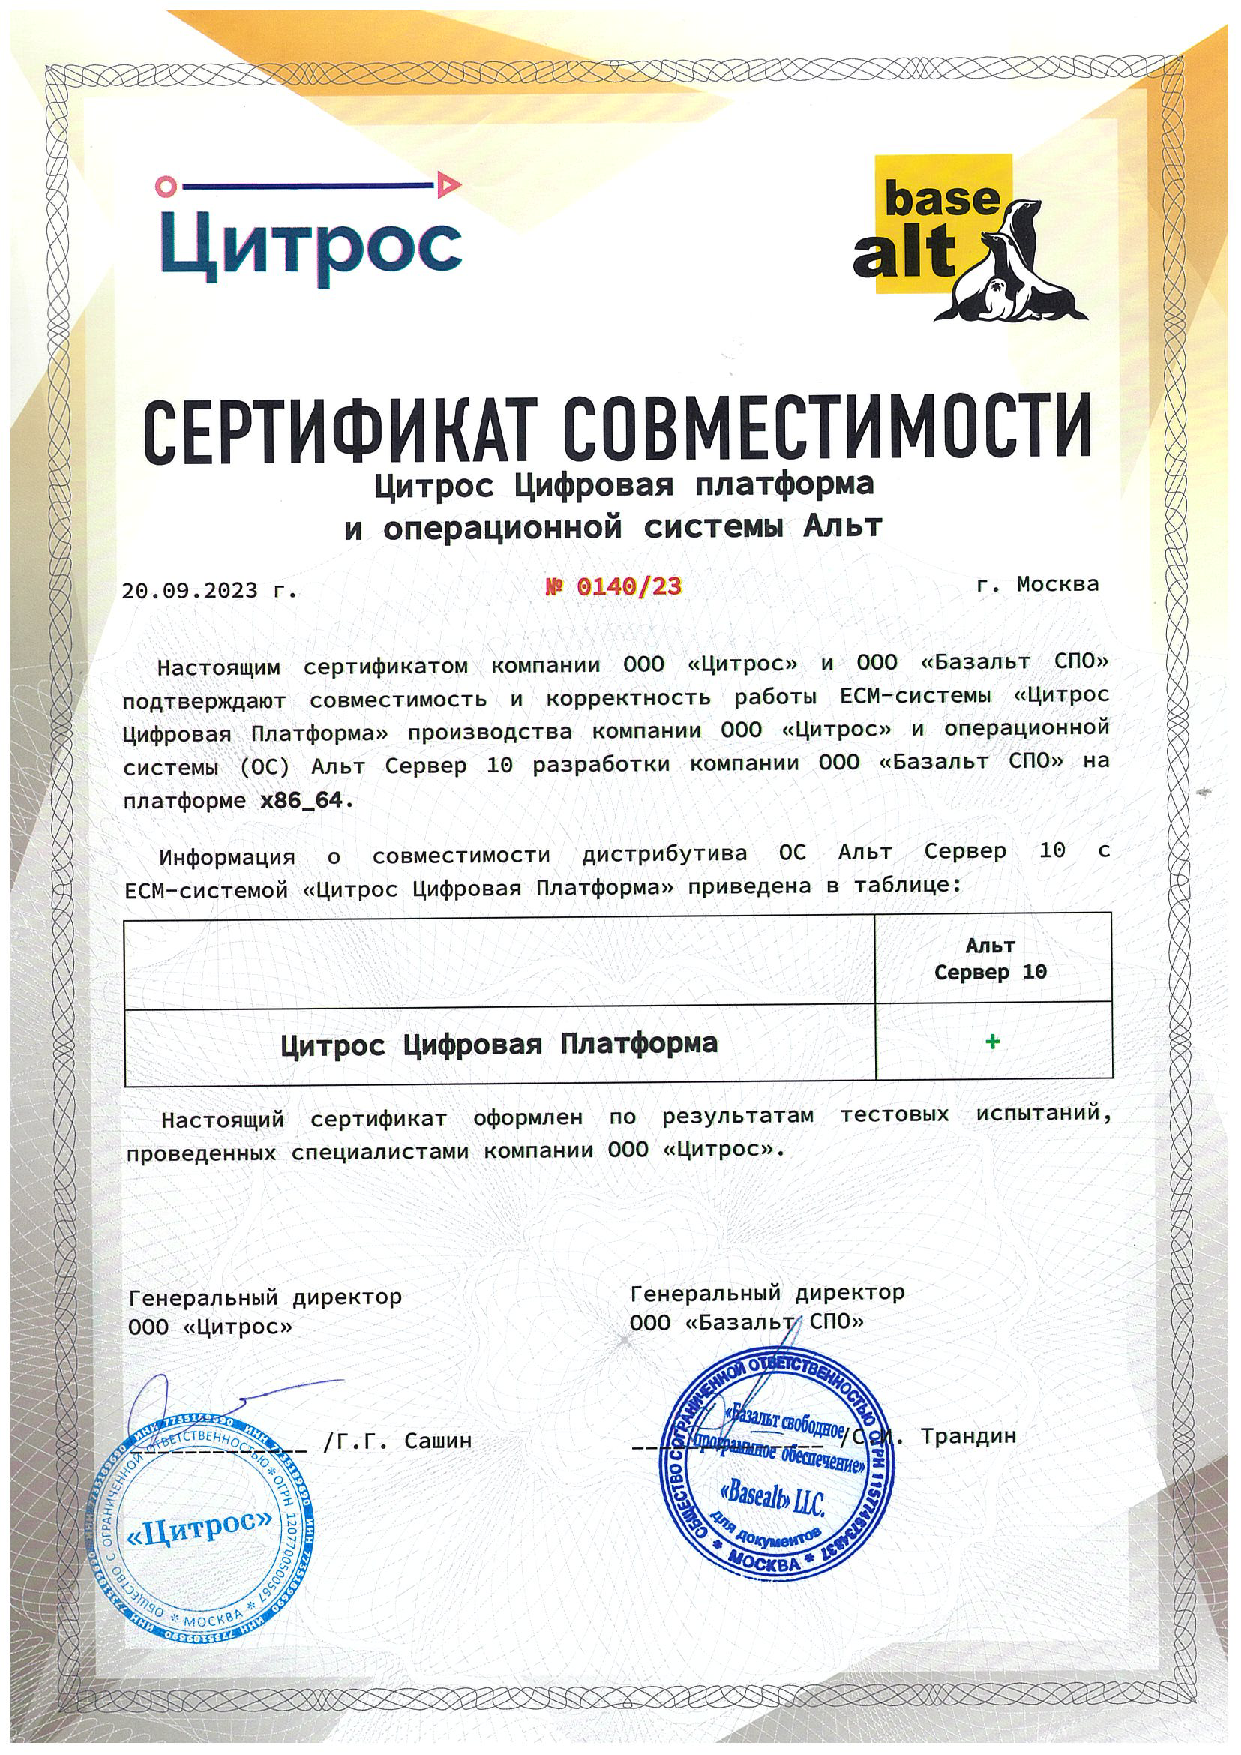 Сертификат совместимости «Цитрос Цифровая Платформа» и ОС «Альт» 